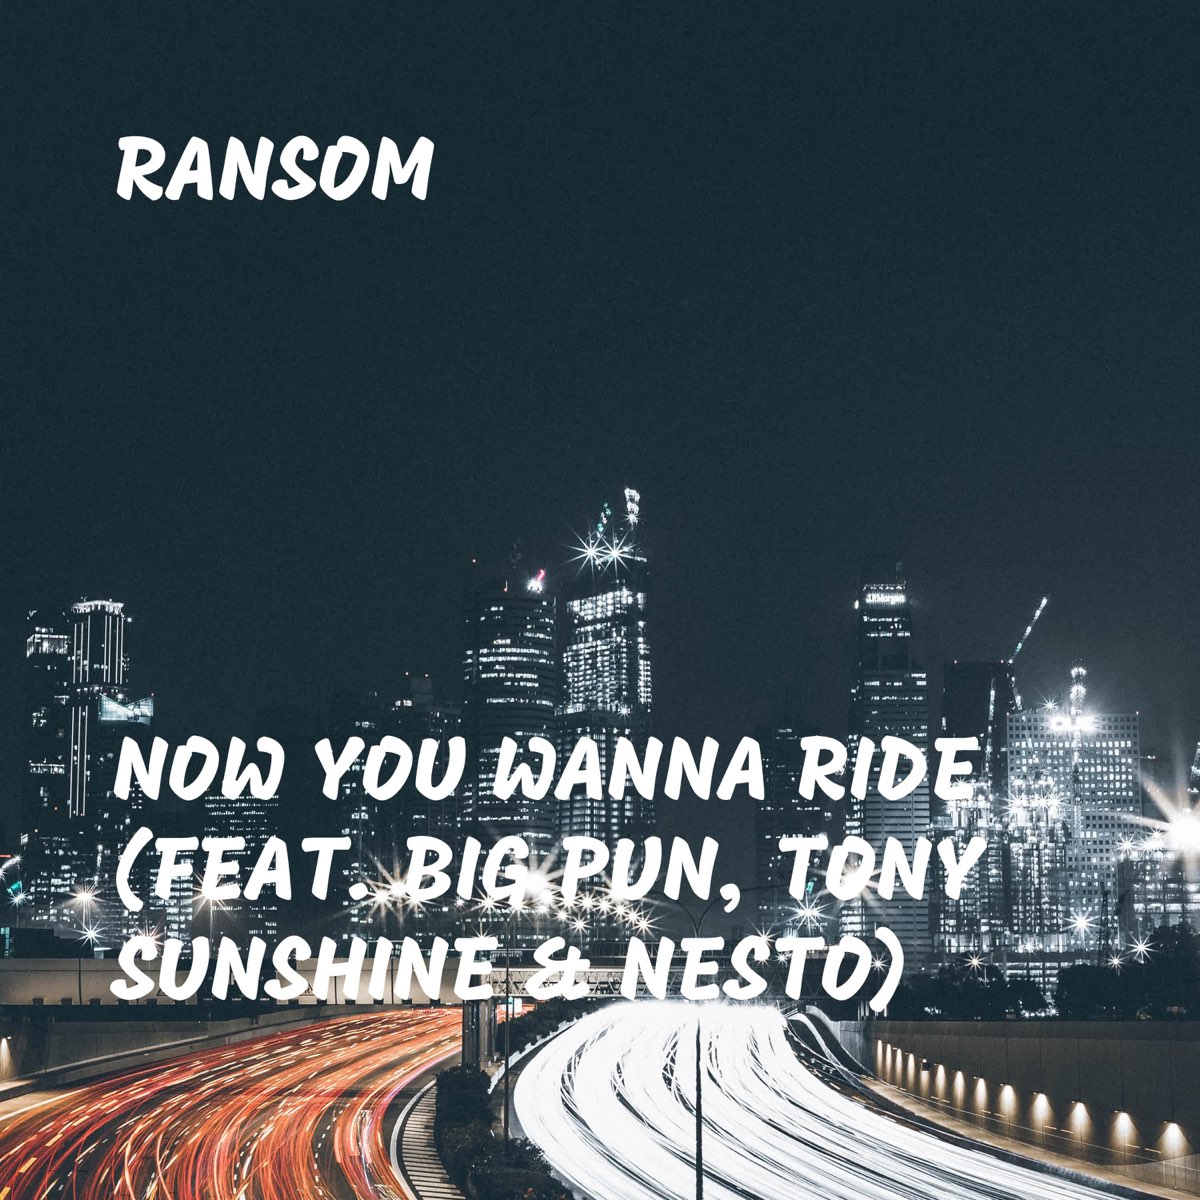 Ride it песня перевод